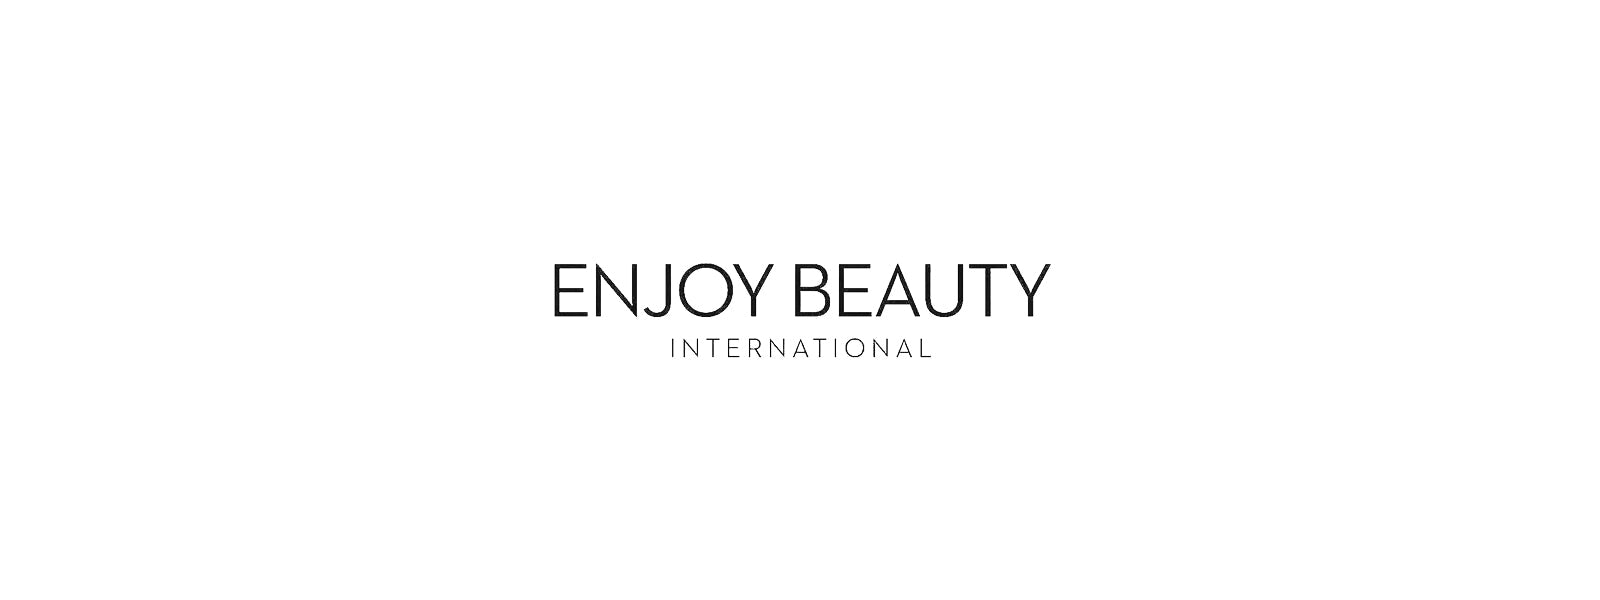 Enjoy Beauty International – Australia's Green Cauldron